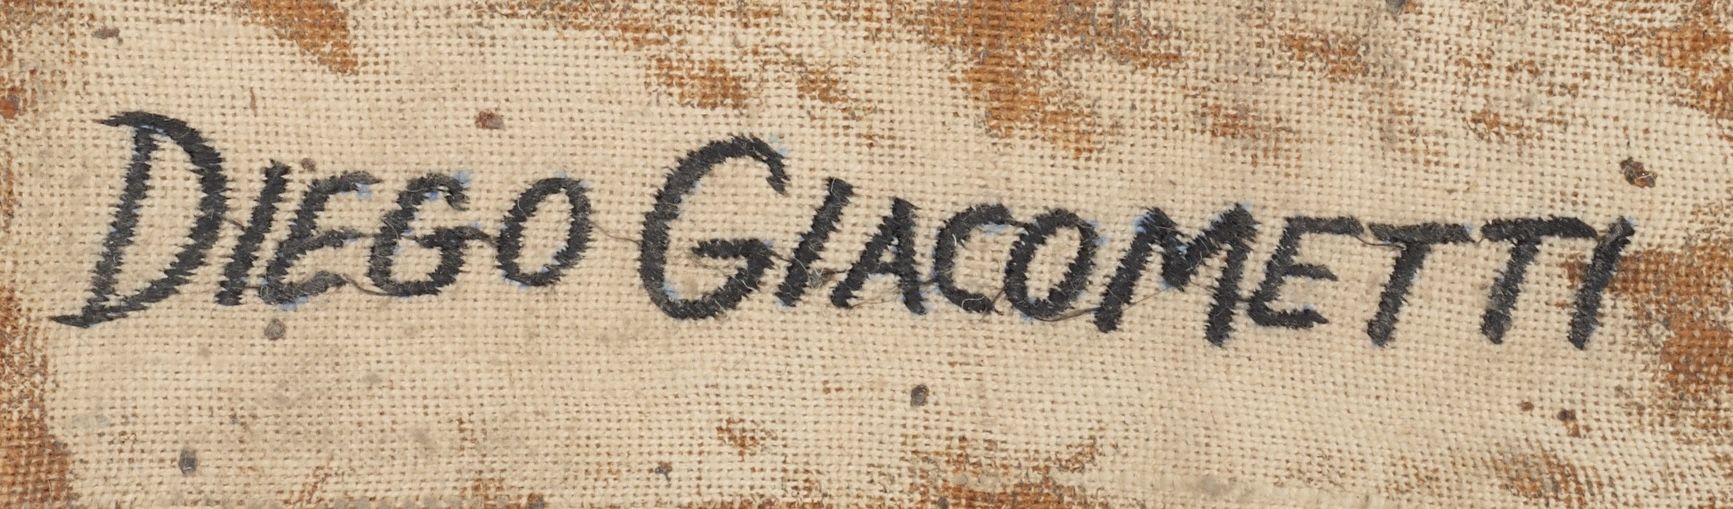 Signature de Diego Giacometti